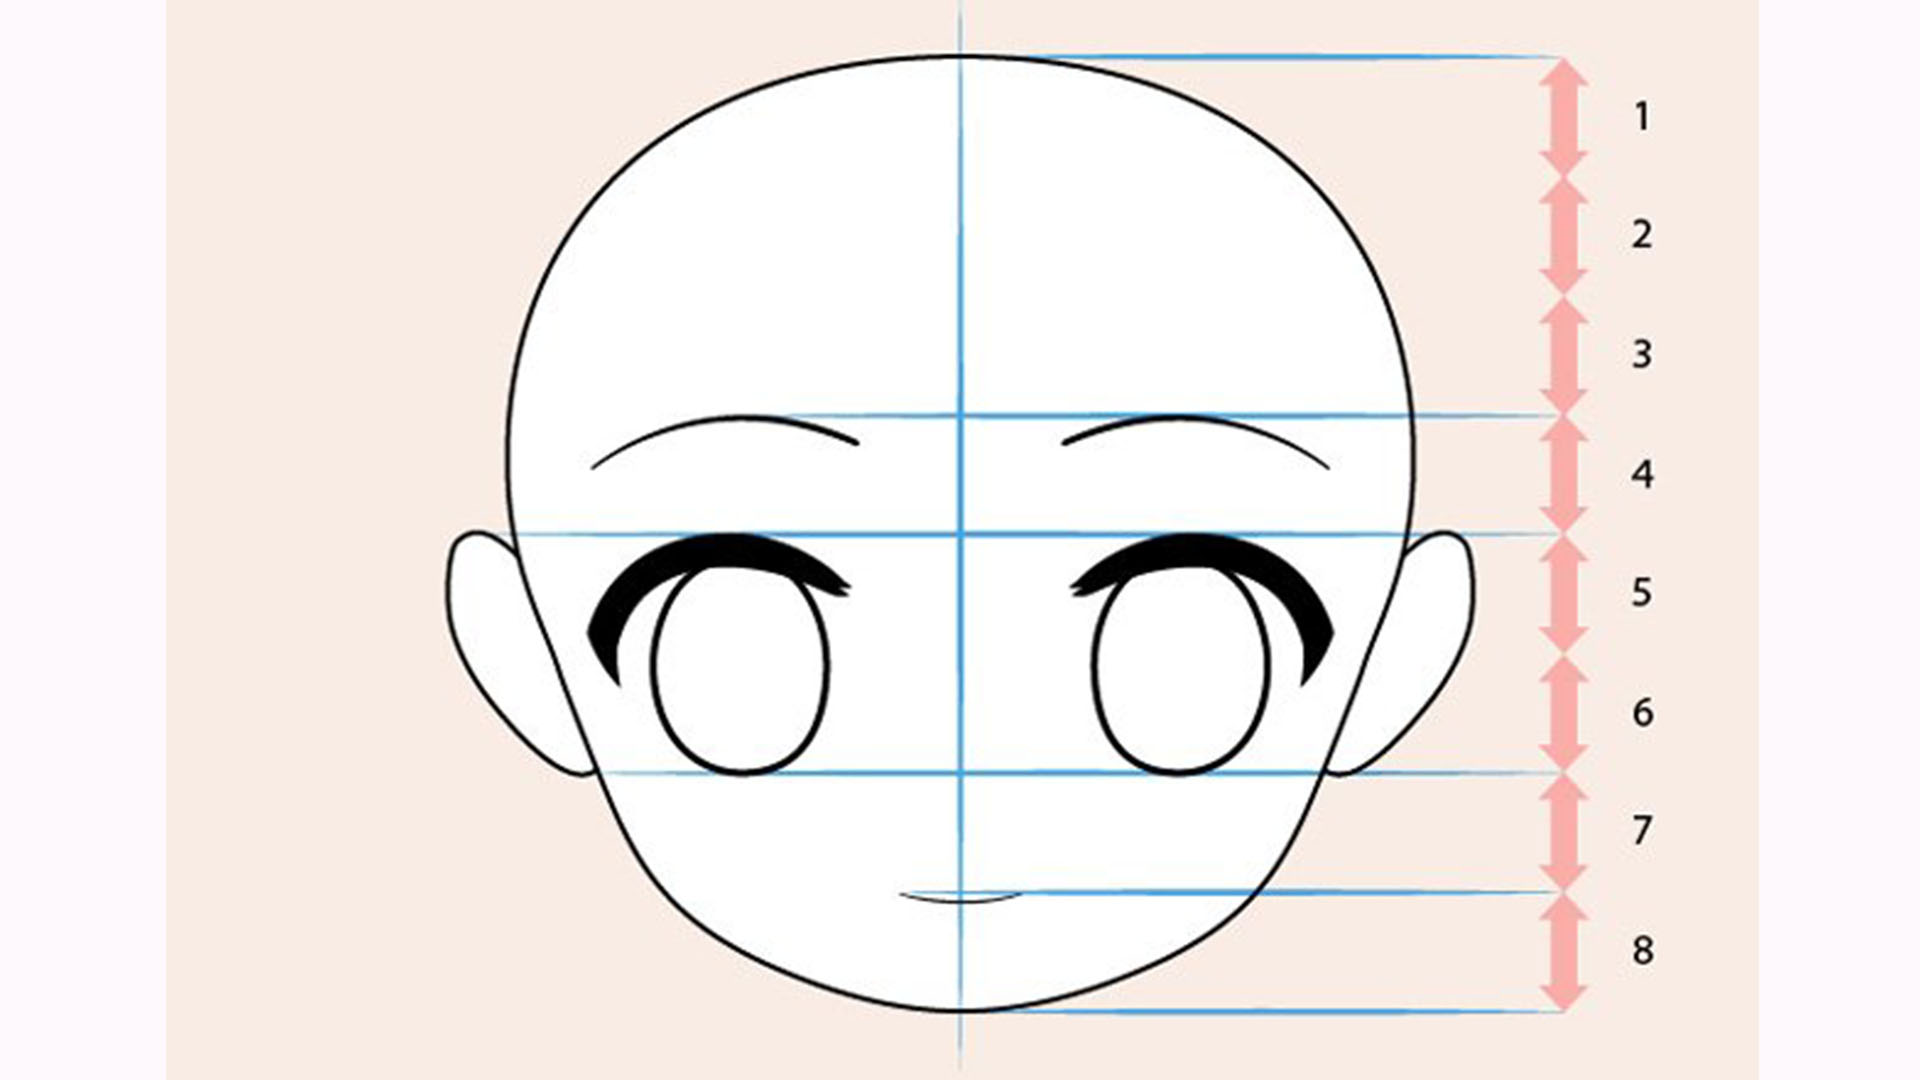 Hình vẽ cute anime chibi đơn giản mà lại đẹp chất ngất